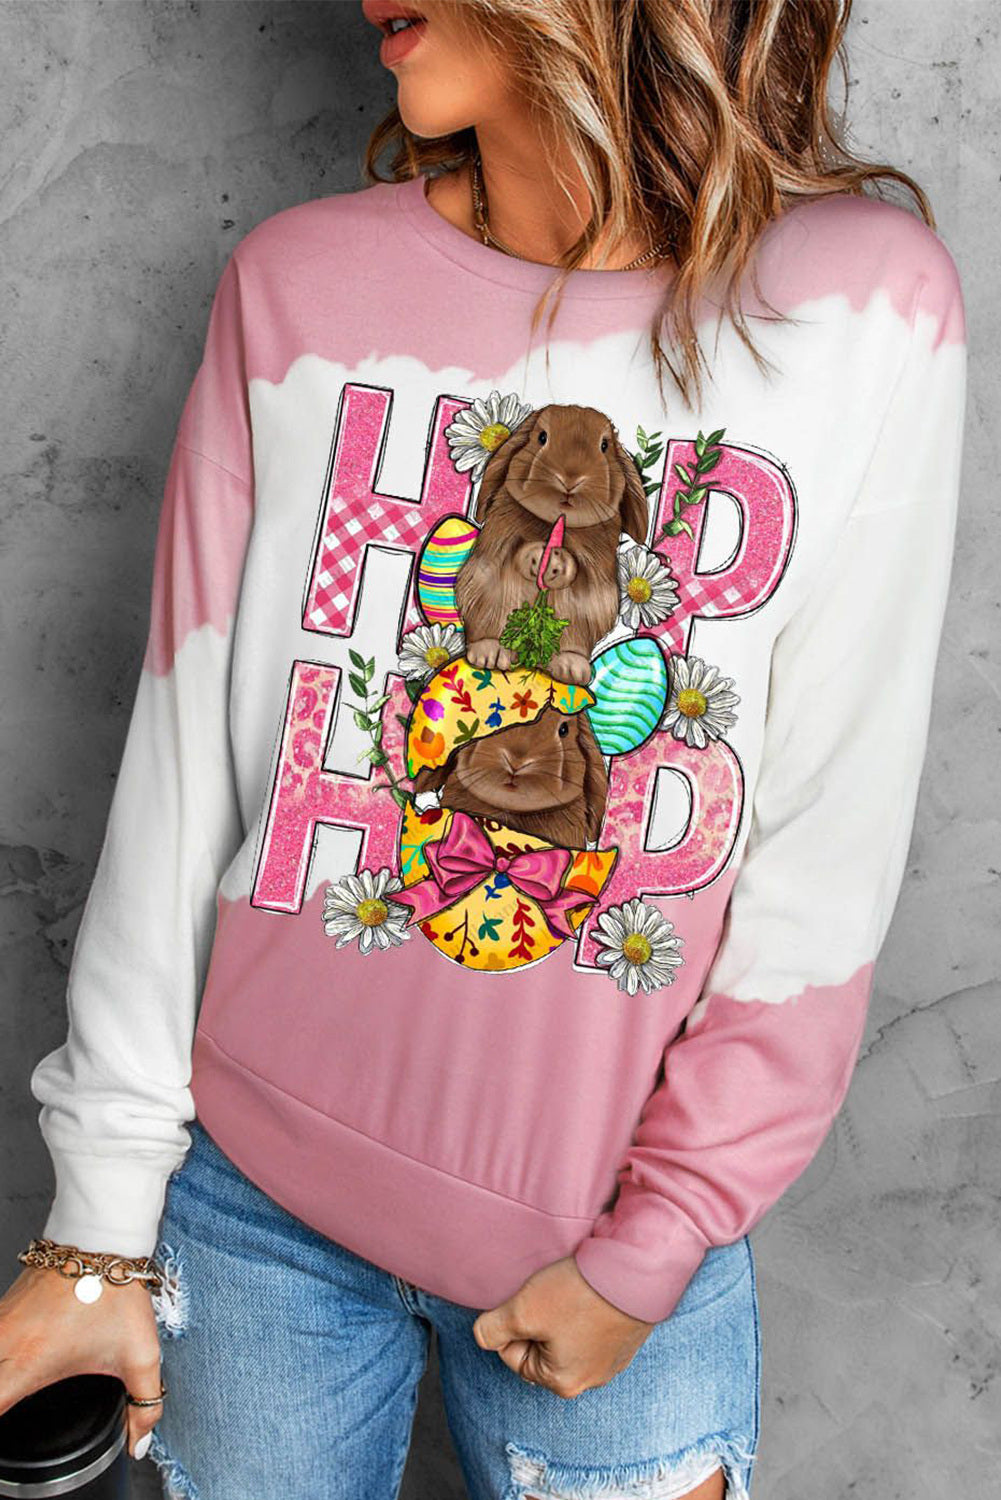 LC25120750-10-S, LC25120750-10-M, LC25120750-10-L, LC25120750-10-XL, LC25120750-10-2XL, Pink Easter Print Bunny Graphic Crew Neck Sweatshirt Pullover Tops